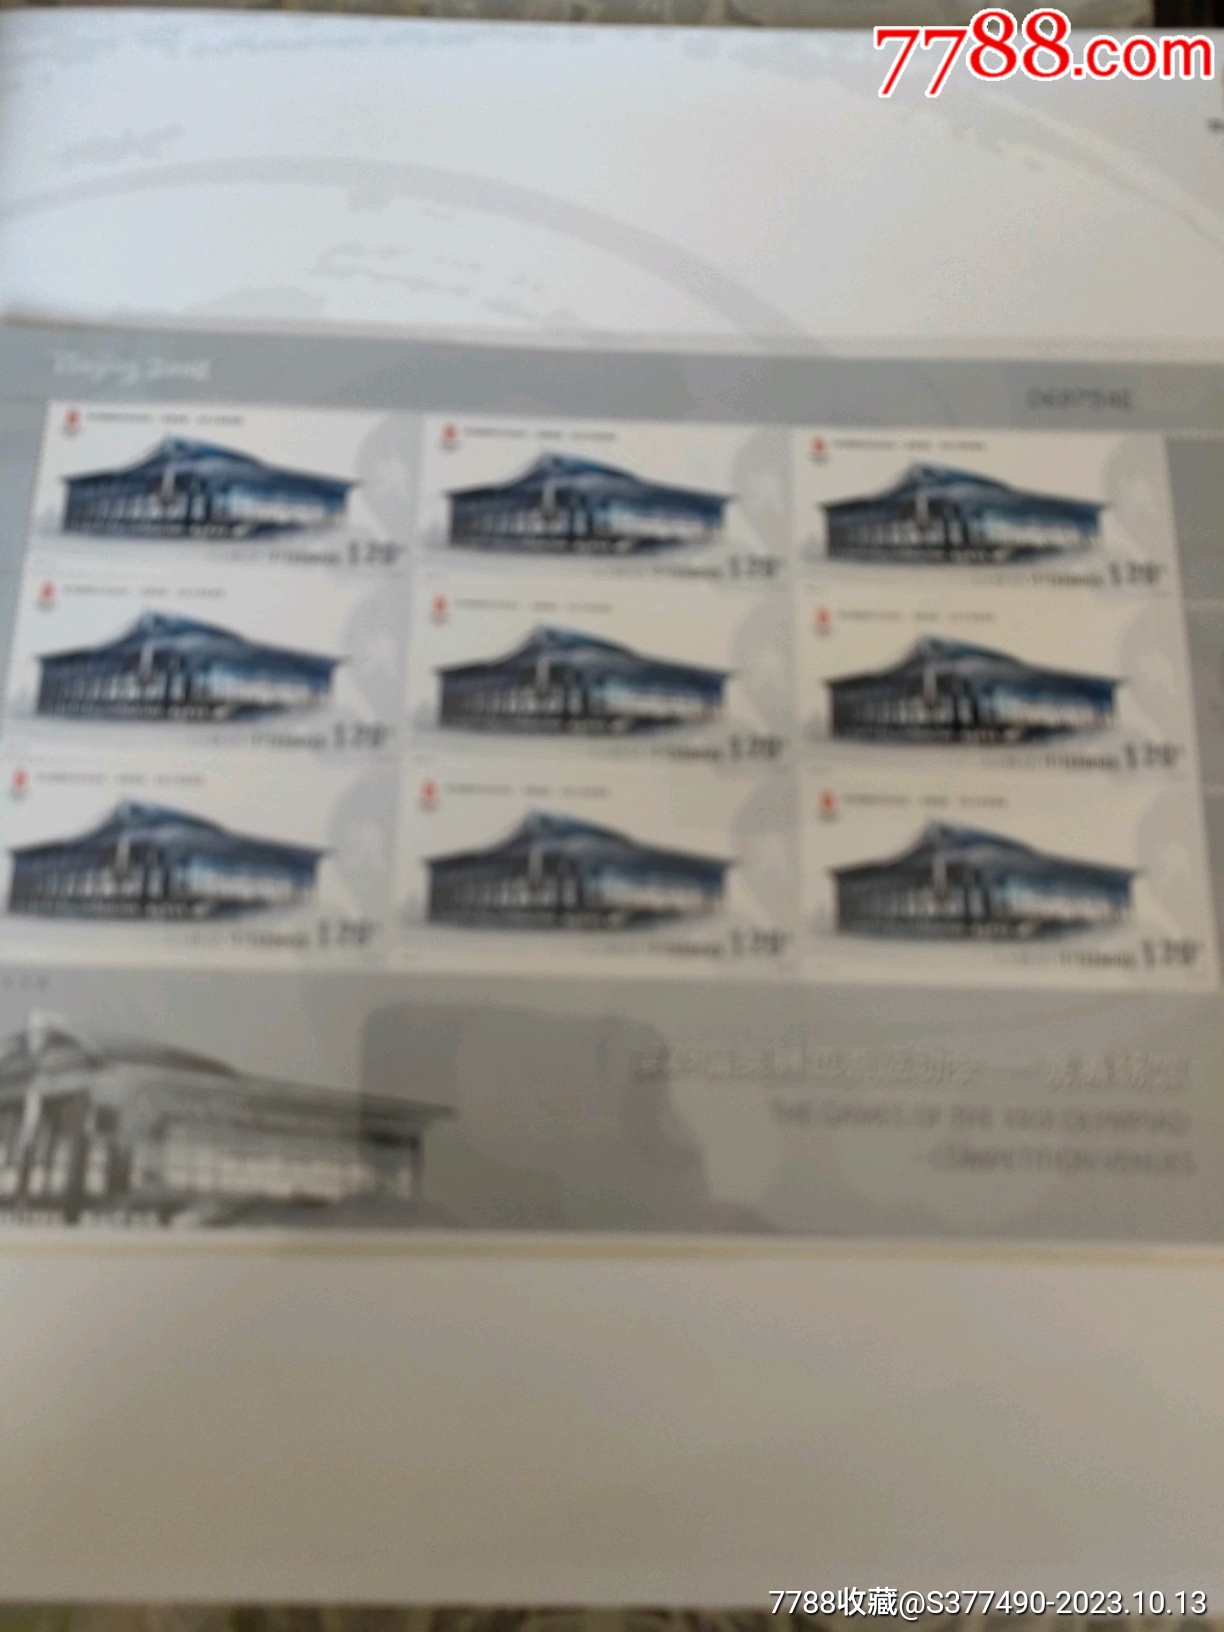 2008奧運會竟賽場館郵票小版張大全冊_價格276元_第14張_